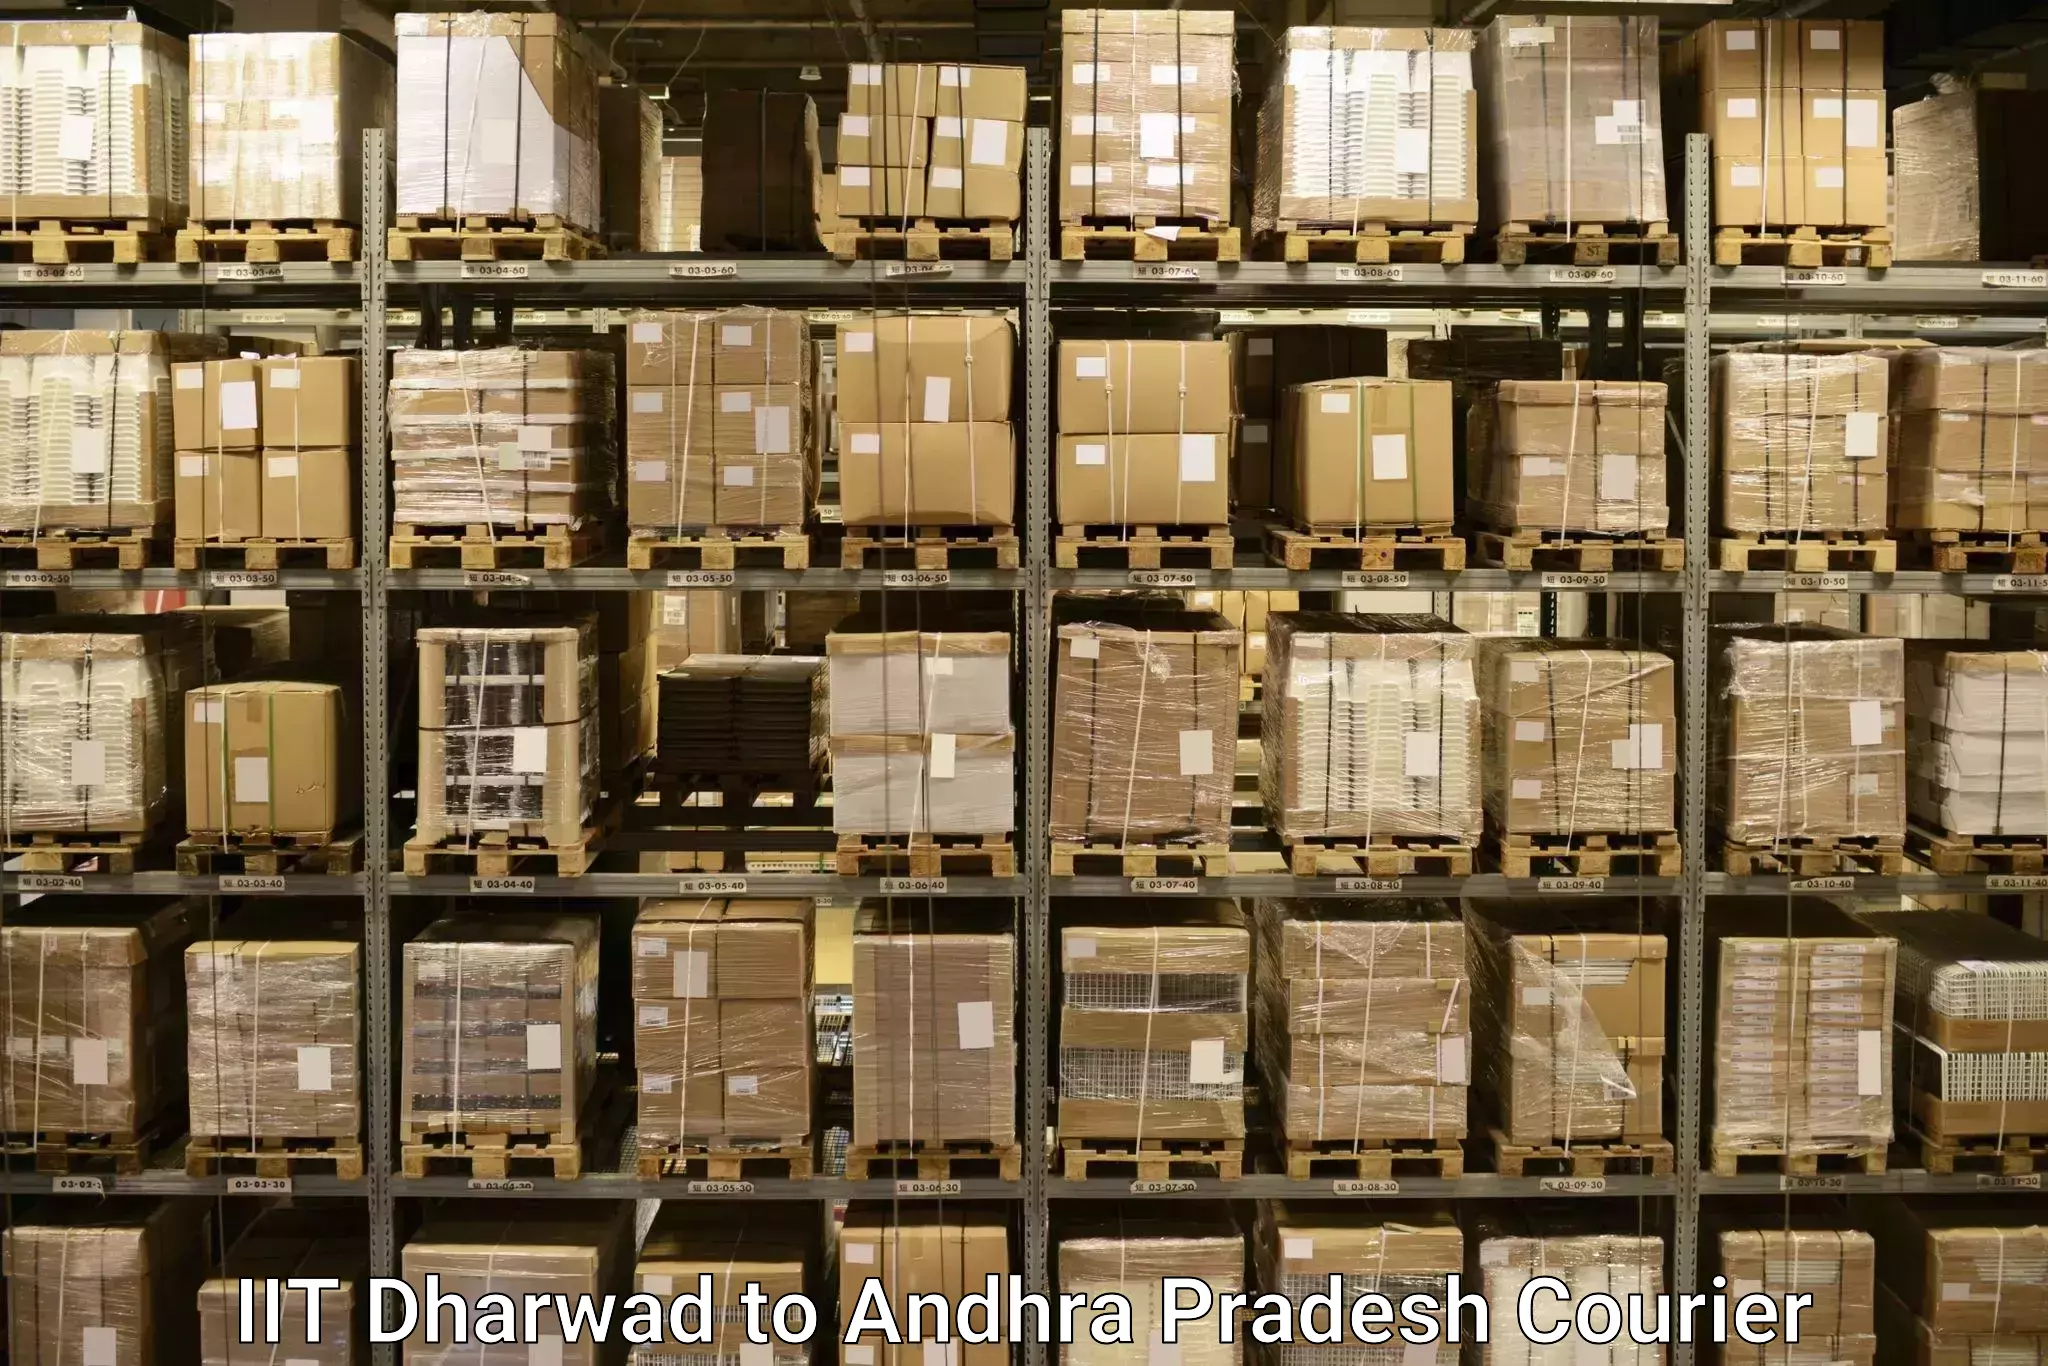 Baggage shipping experience IIT Dharwad to Rajayyapeta